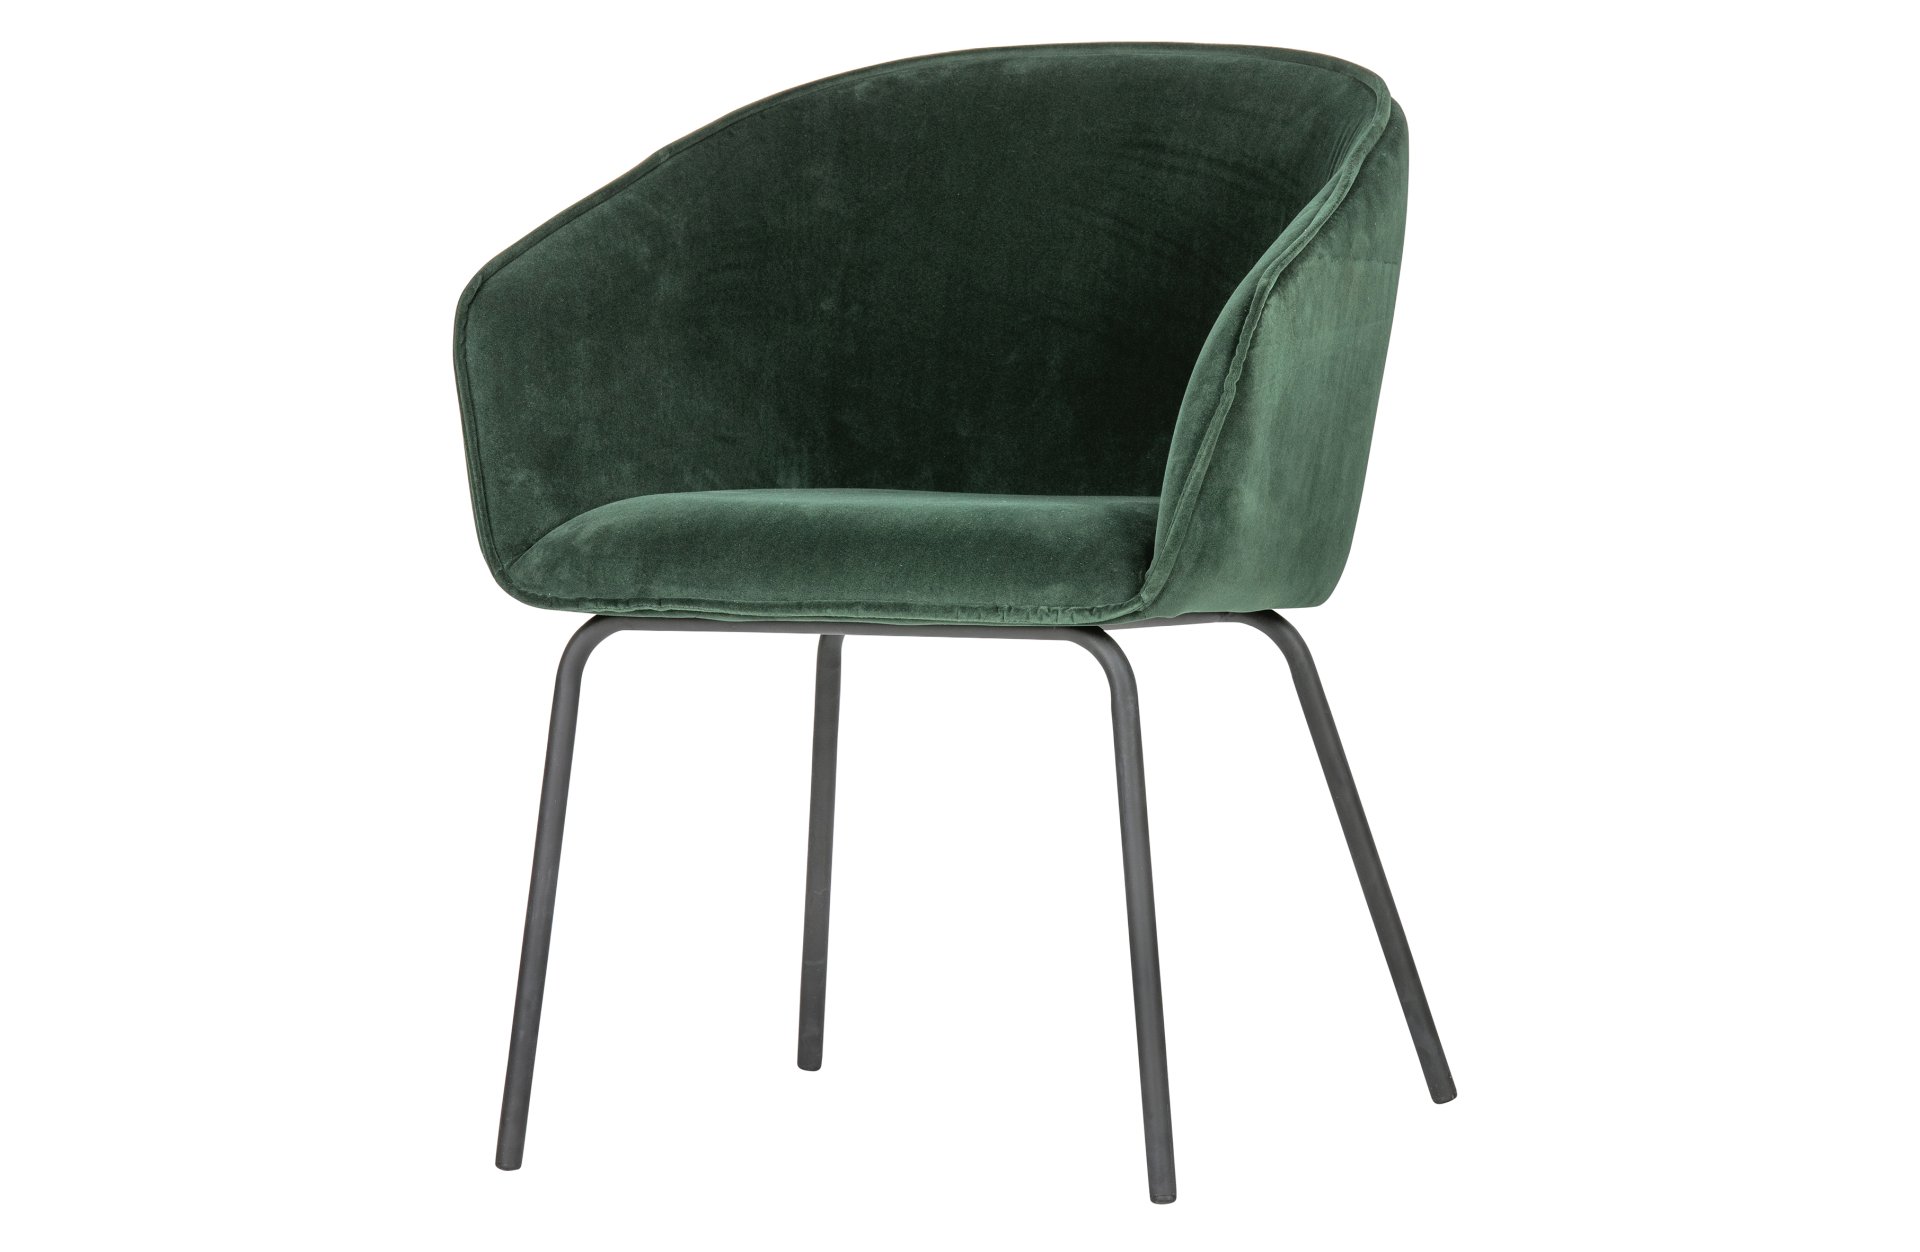 Der Esszimmerstuhl Sien wurde mit einem Samt Bezug bezogen. Er ist immer als 2er-Set erhältlich. Der Stuhl ist in zwei Varianten verfügbar, dieser besitzt die Farbe Grün.